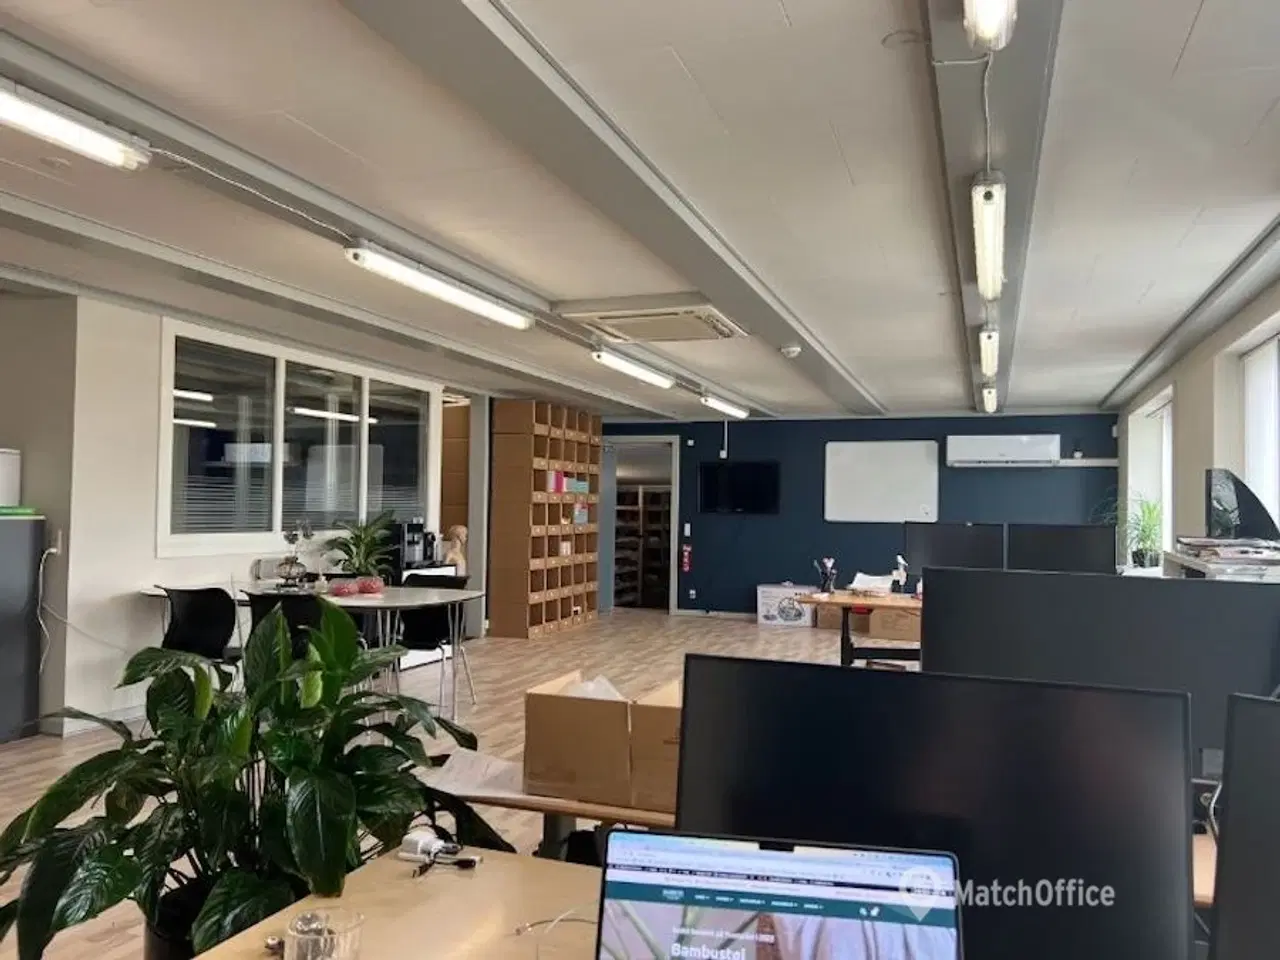 Billede 3 - Kontor og lager til iværksættere og webshops i Esbjerg